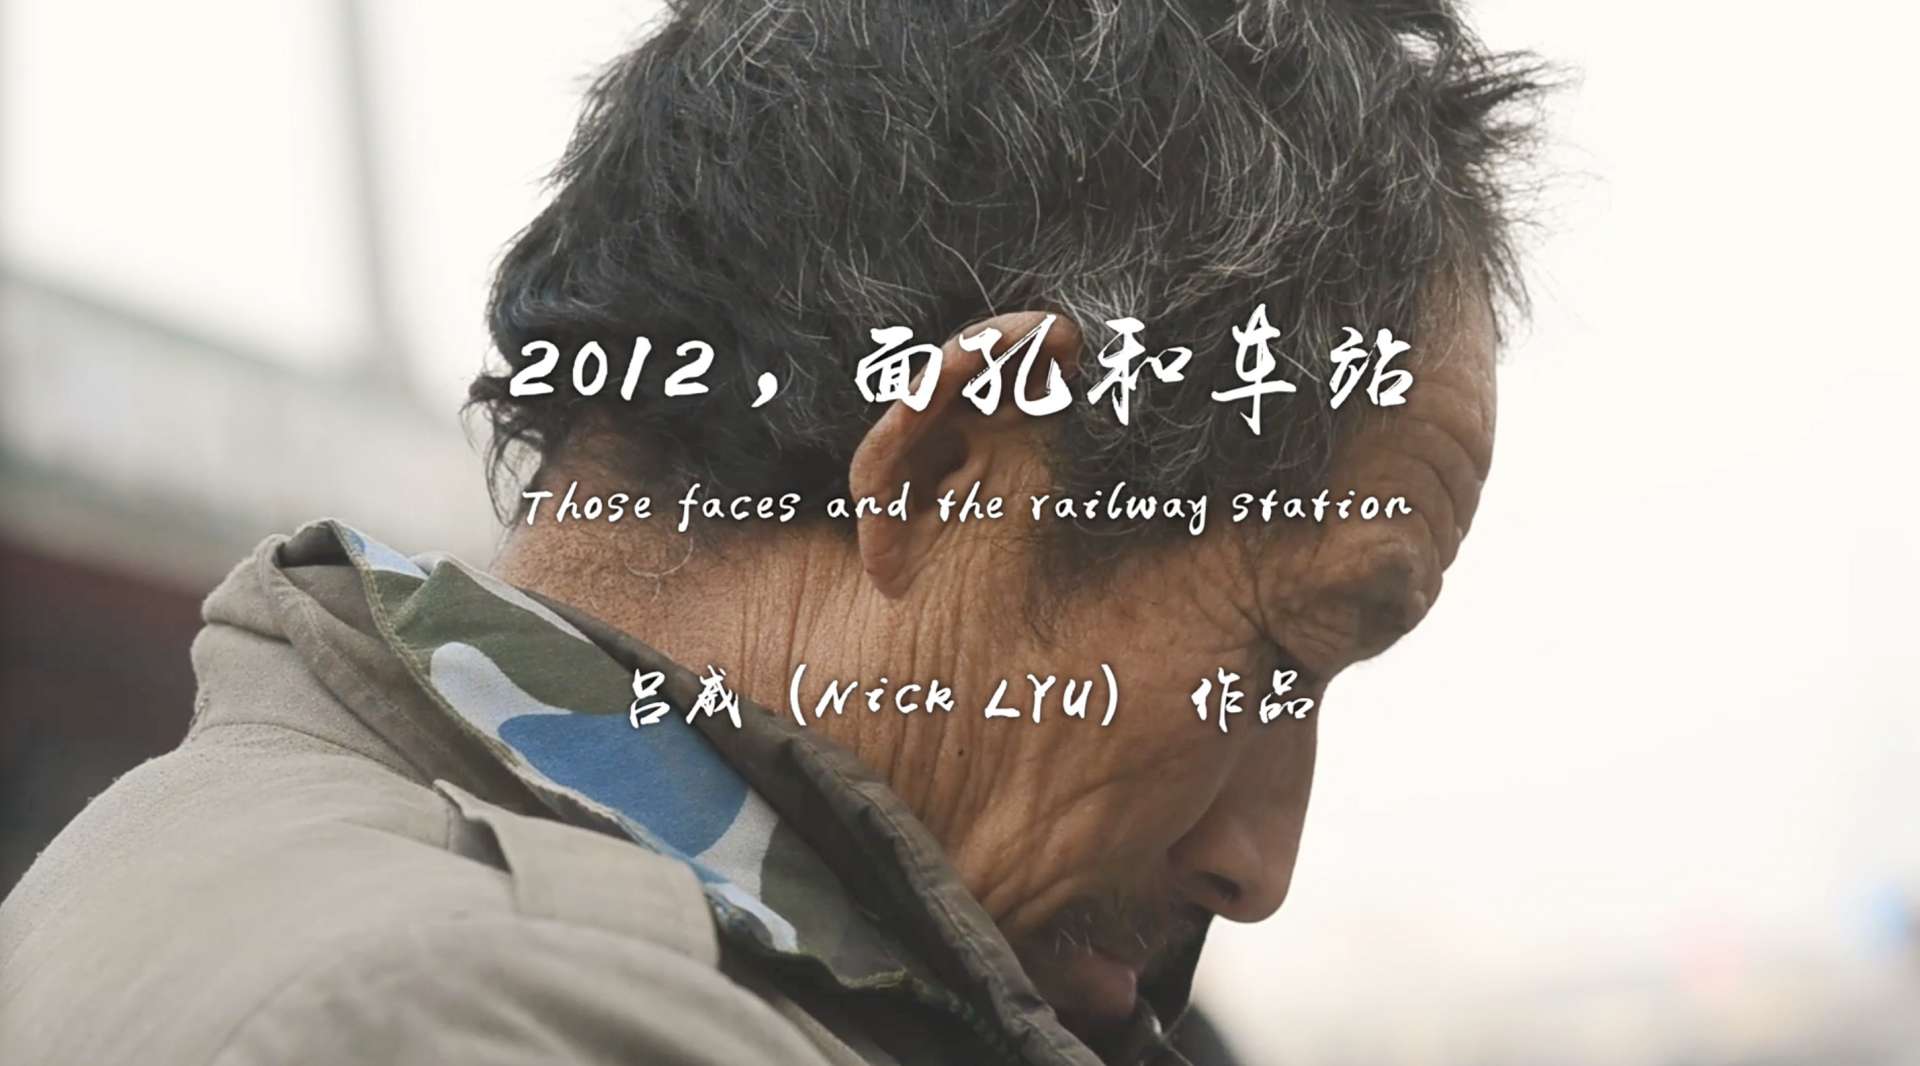 纪录片《2012，面孔和车站》